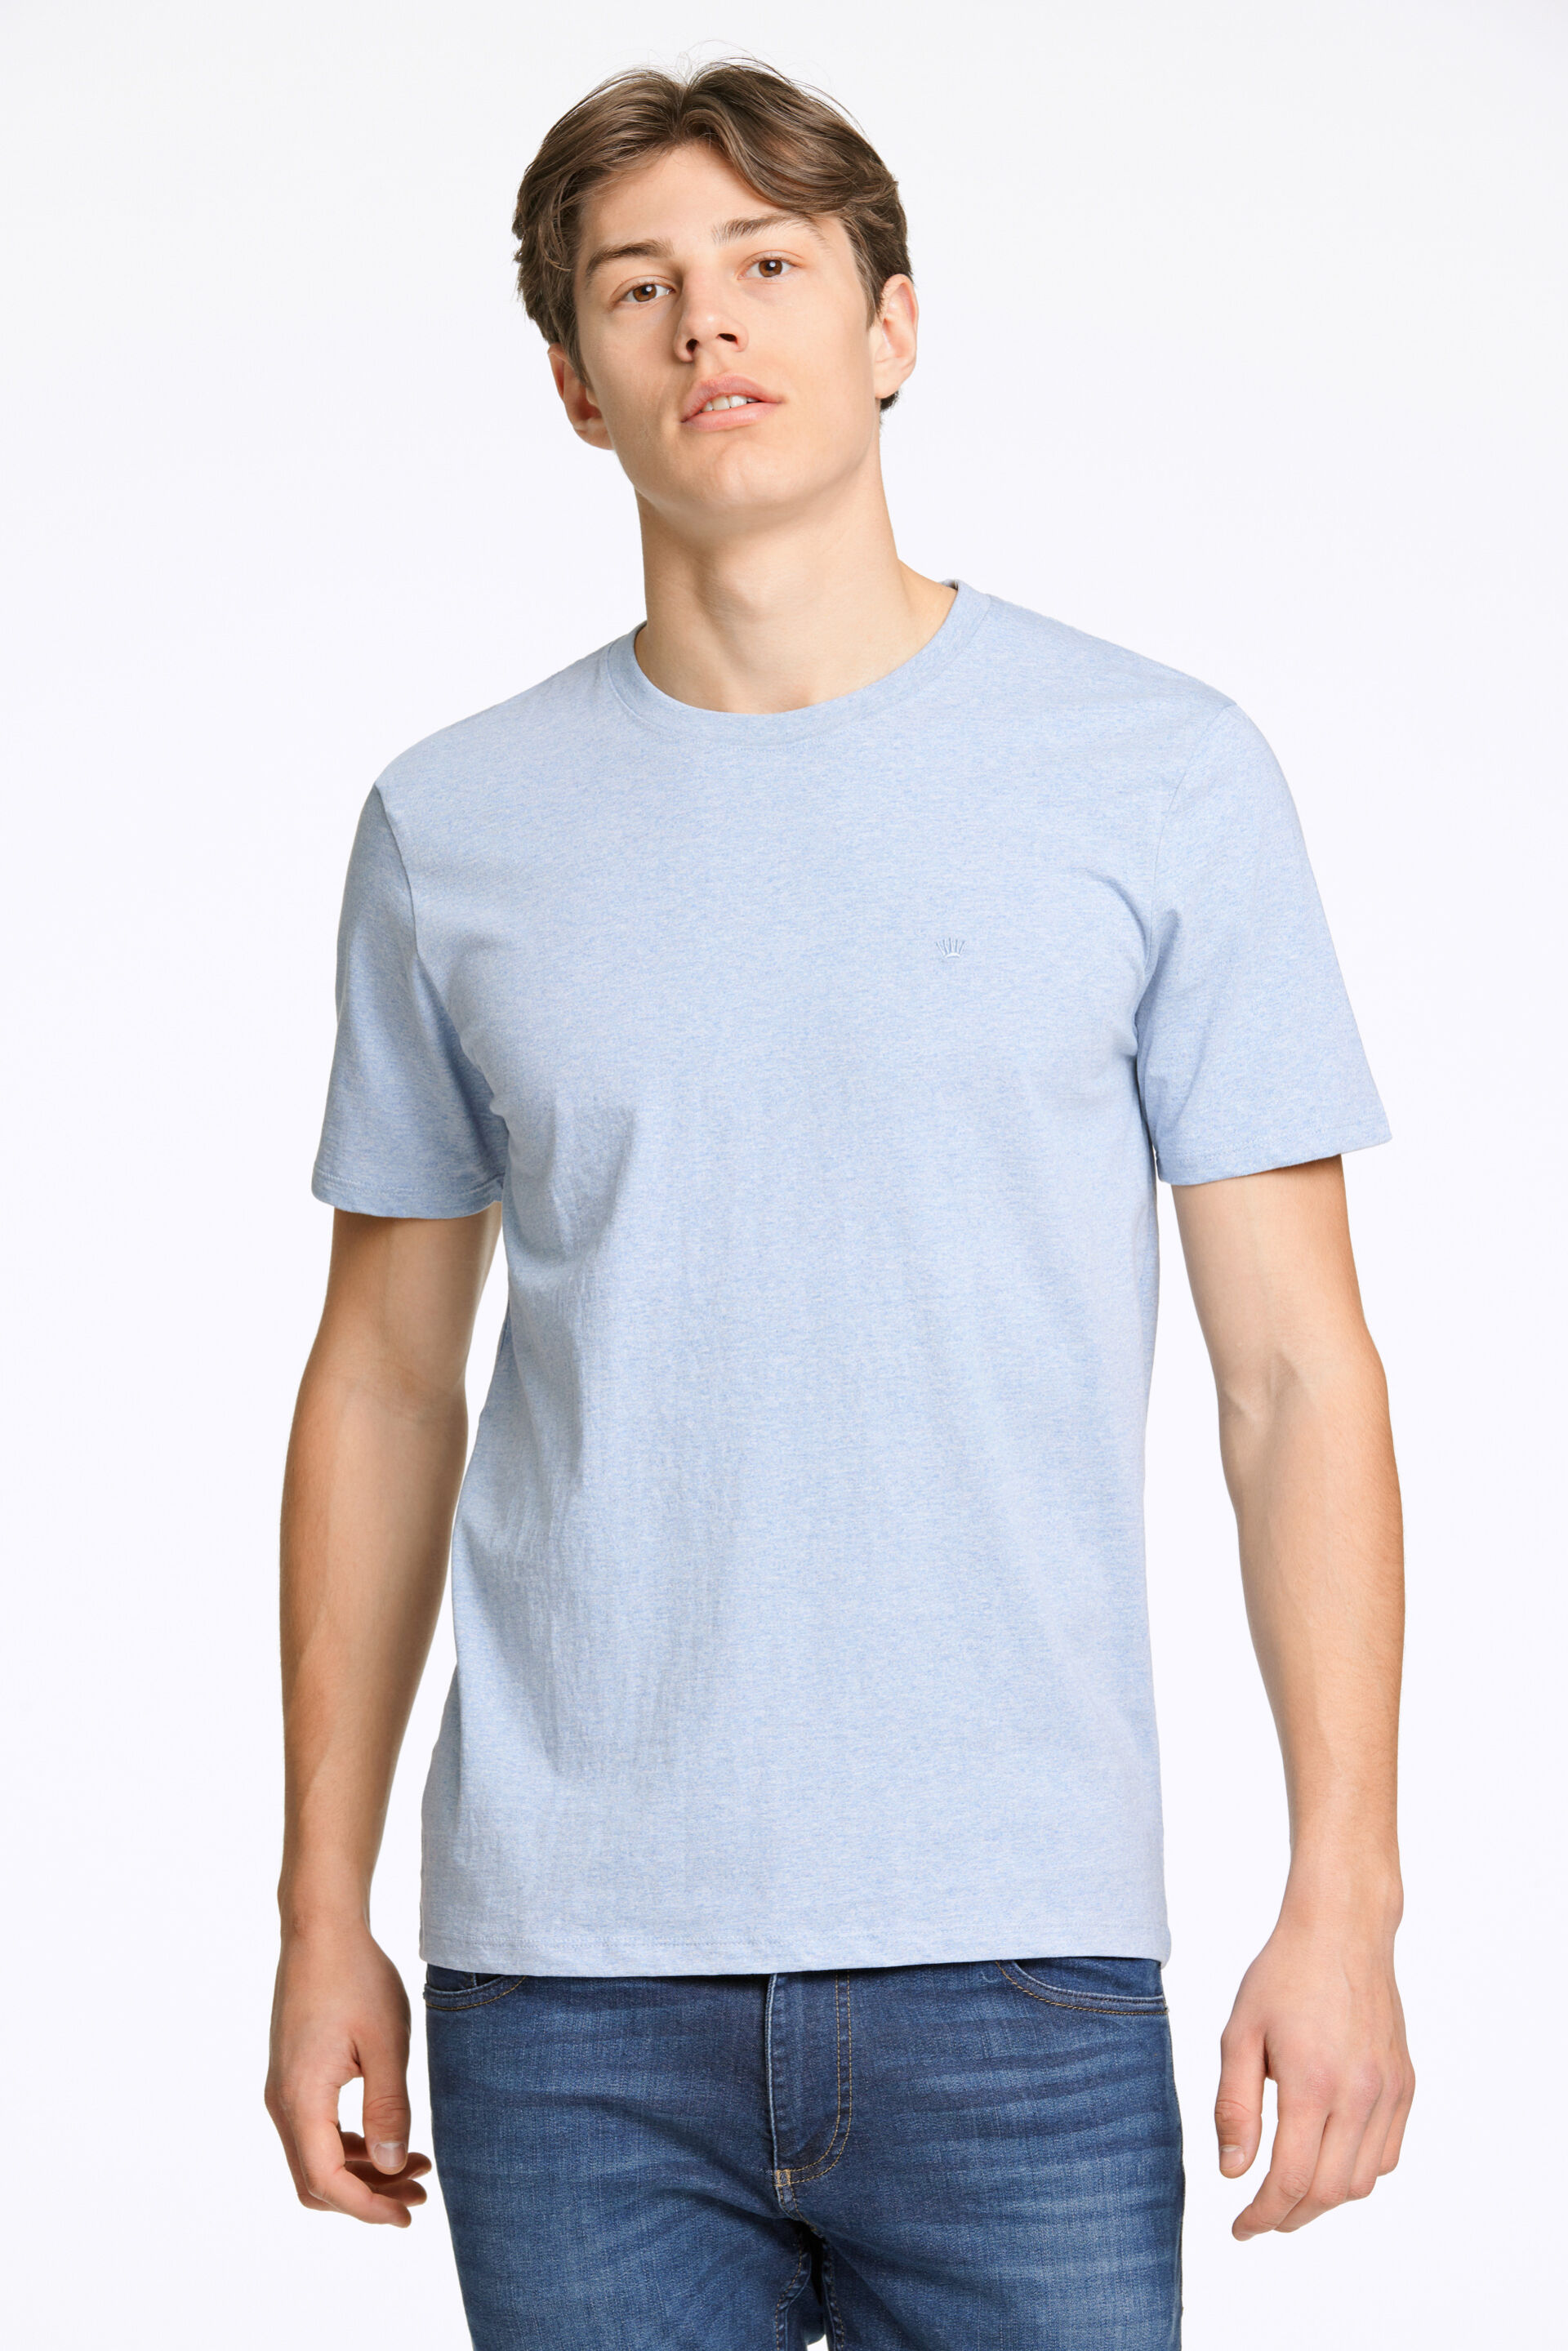 Junk de Luxe  T-shirt Blå 60-455009